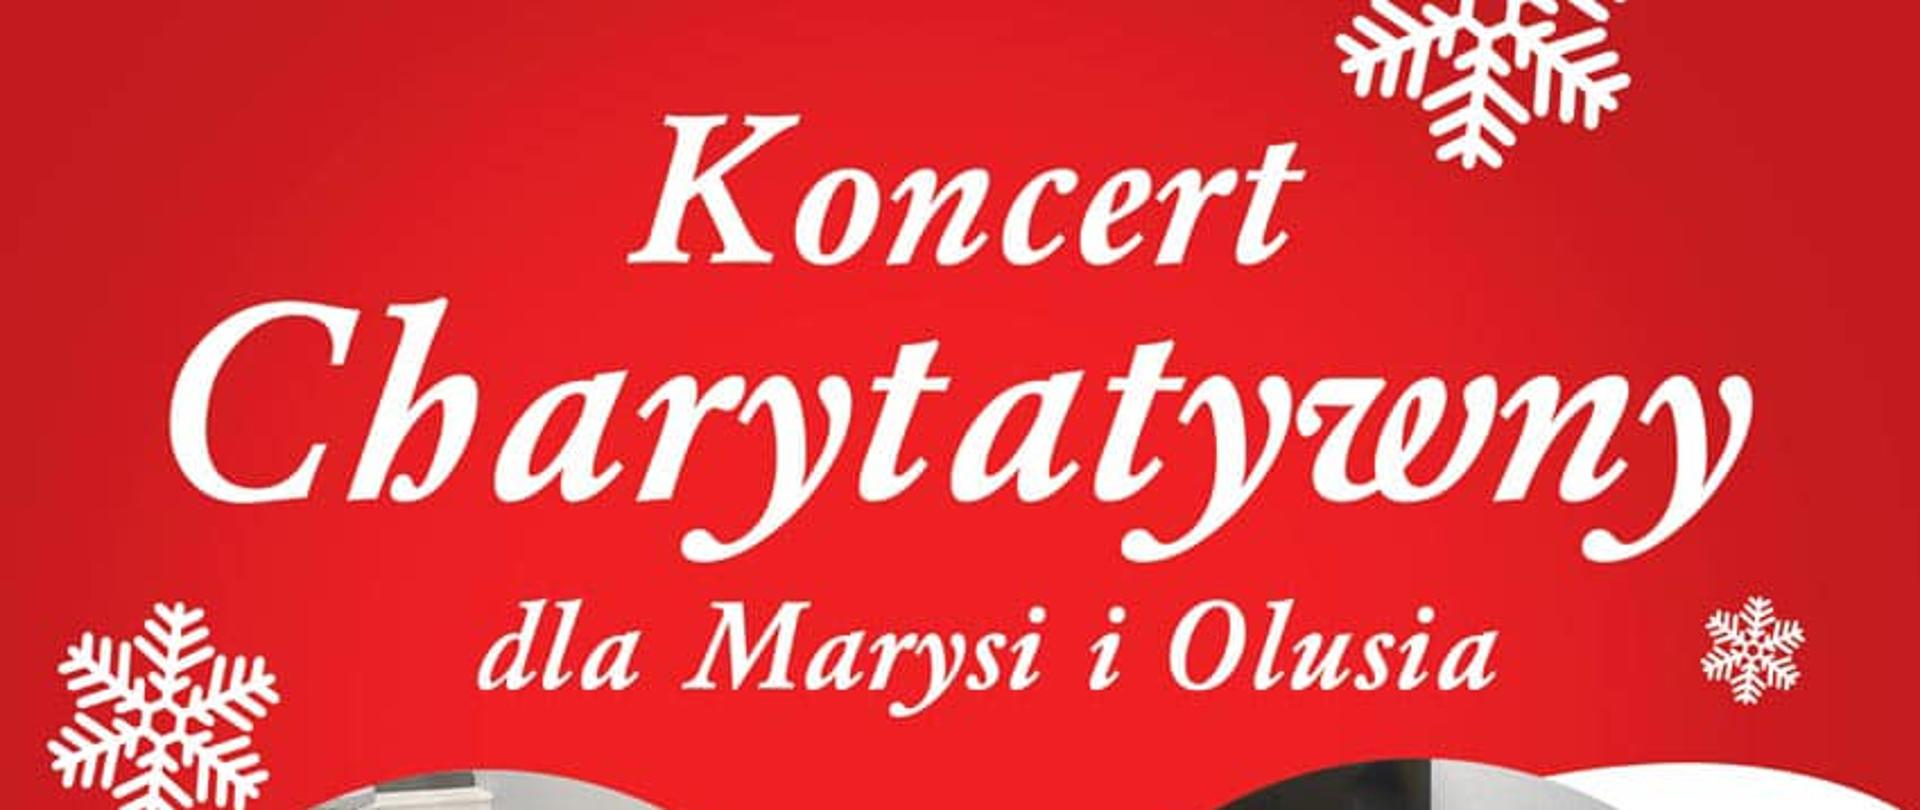 Plakat - Koncert Charytatywny dla Marysi i Olusia 